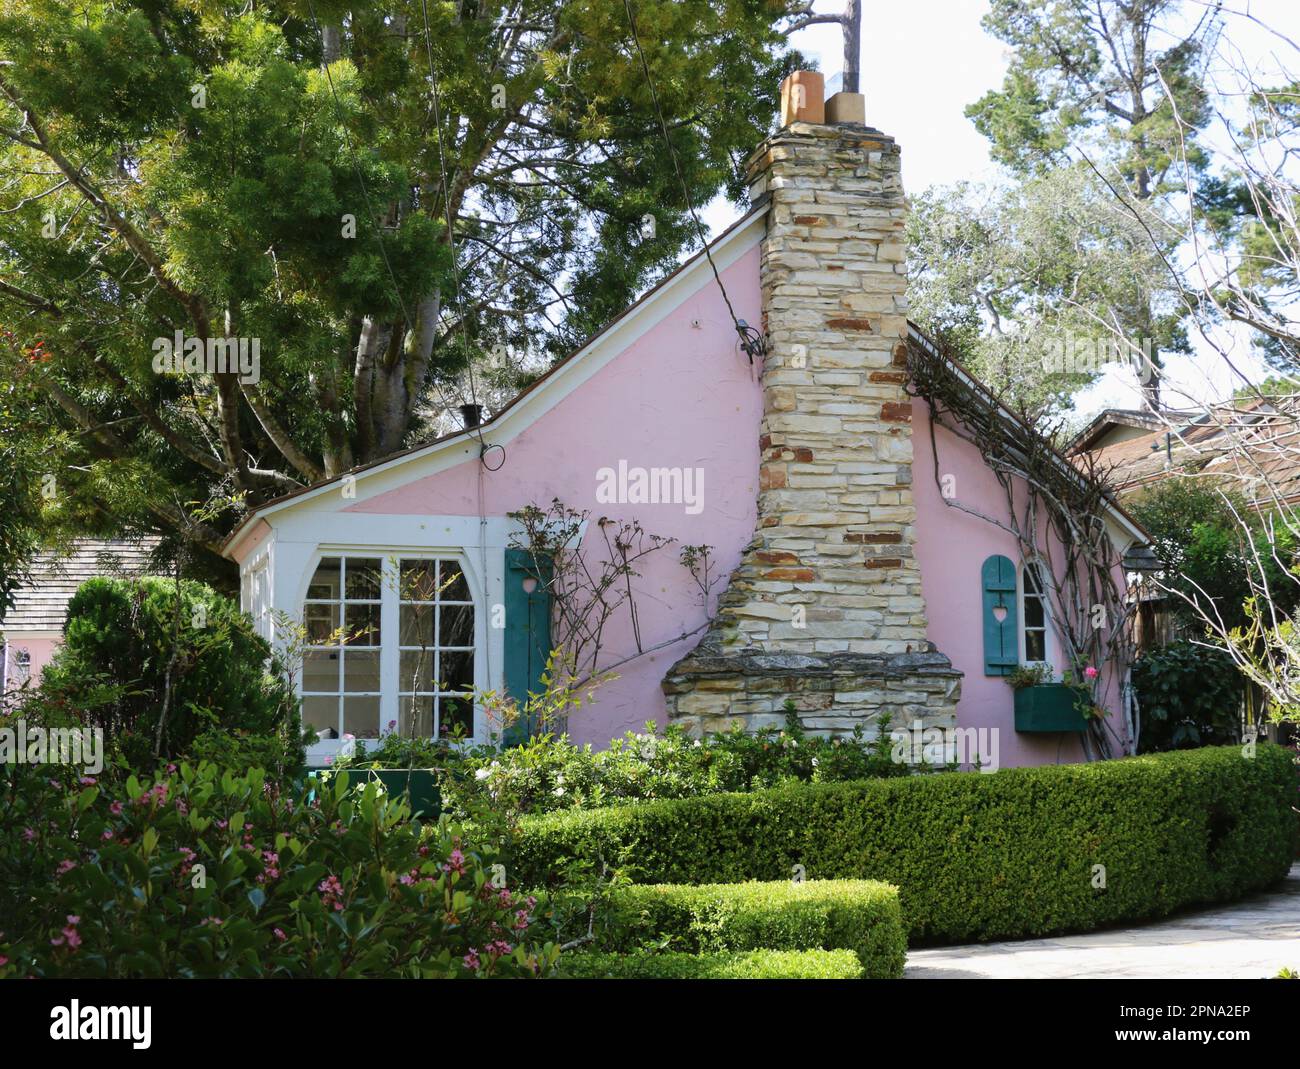 Cottage rosa in uno stile architettonico da favola, Carmel-by-the-Sea, CA, un incantevole villaggio situato sulla costa settentrionale della California. Foto Stock